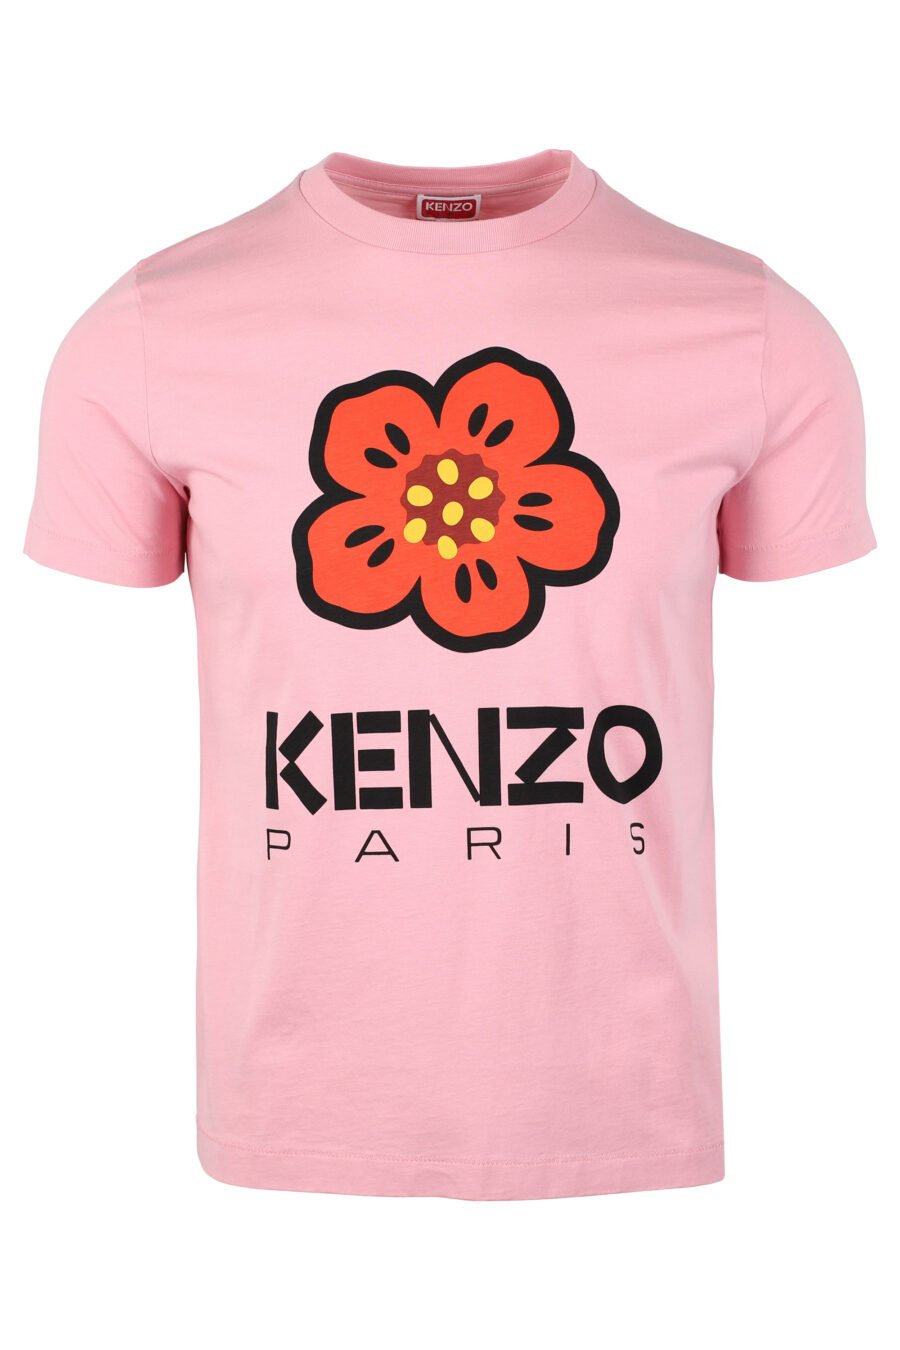 Pink T-shirt with orange flower maxilogo - IMG 4644